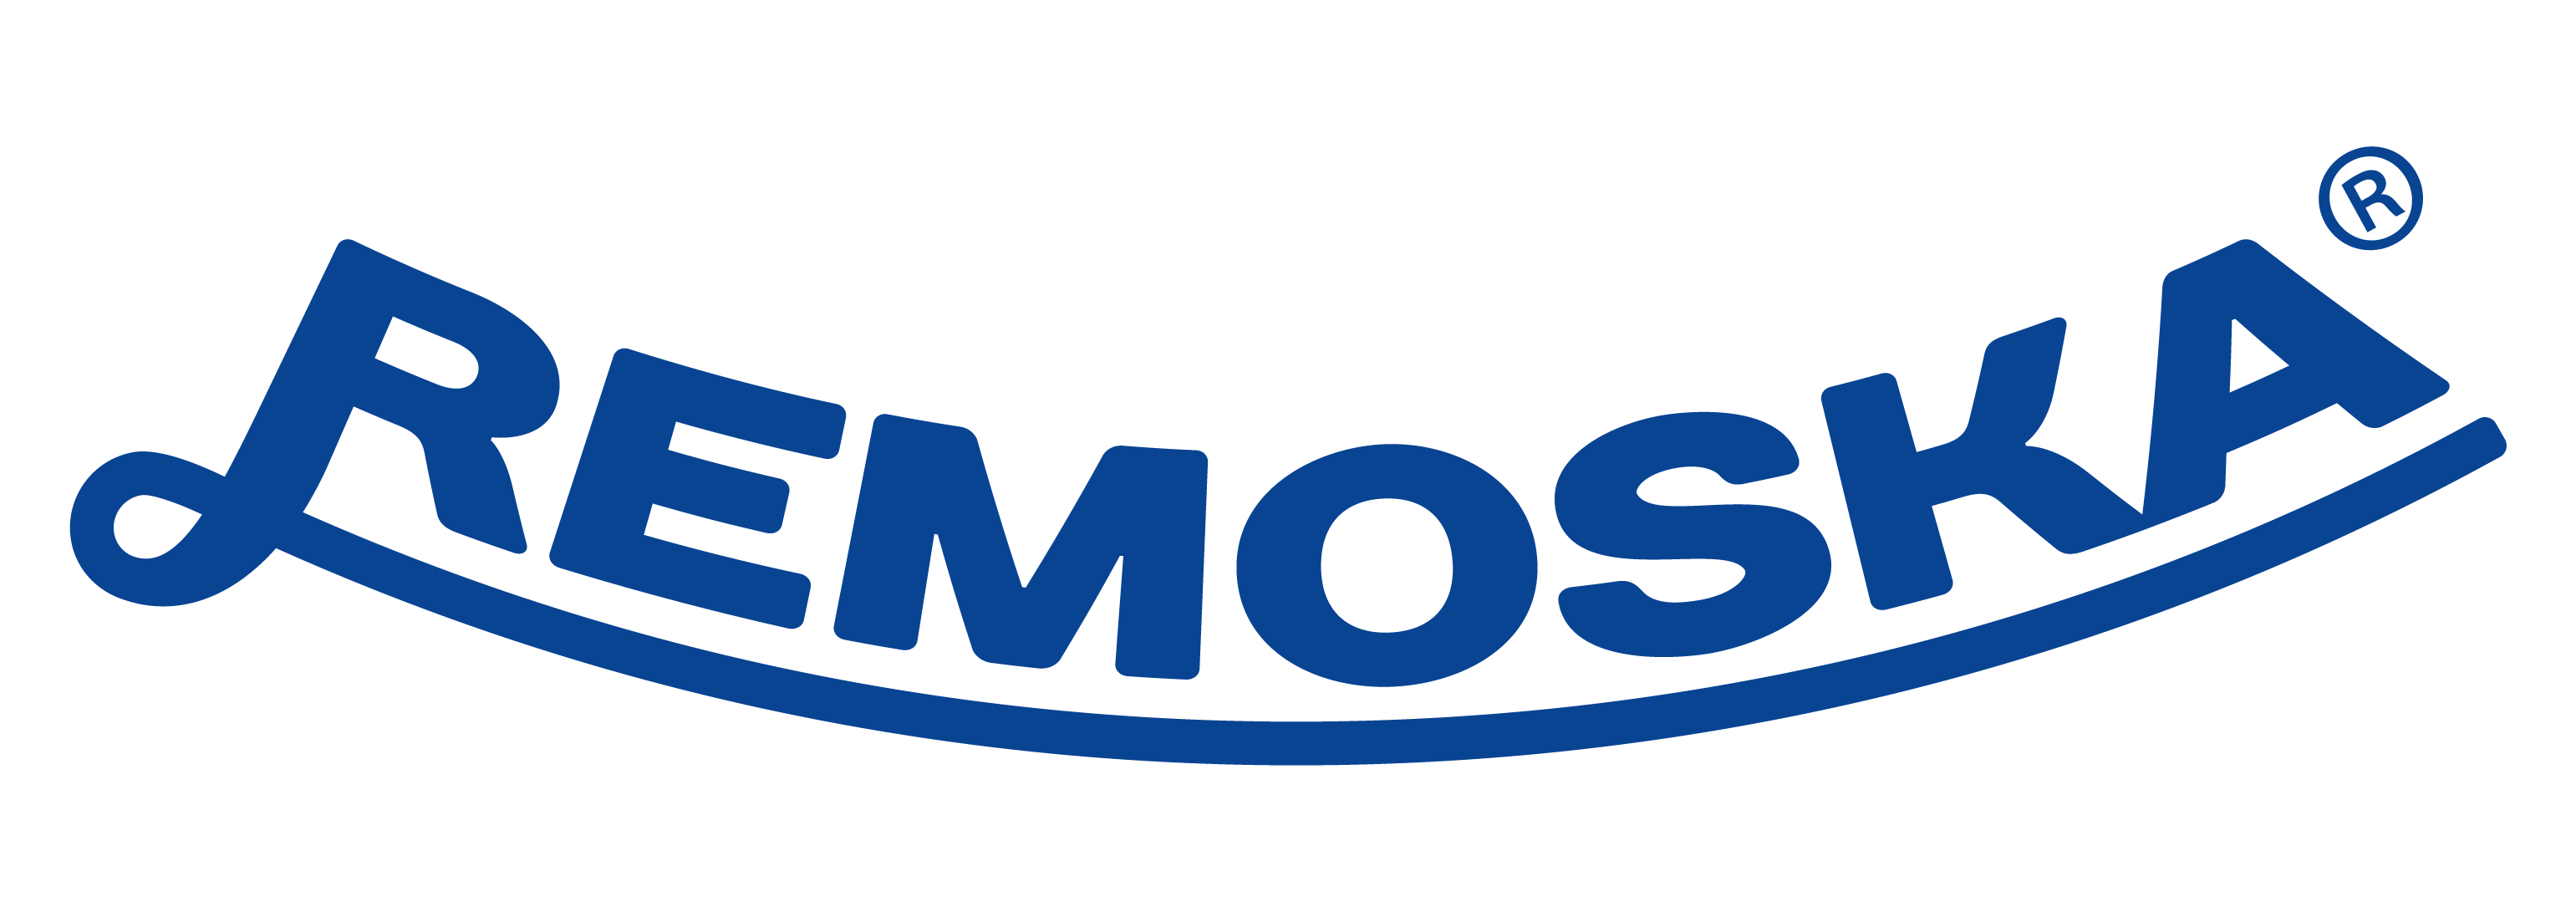 Remoska logo